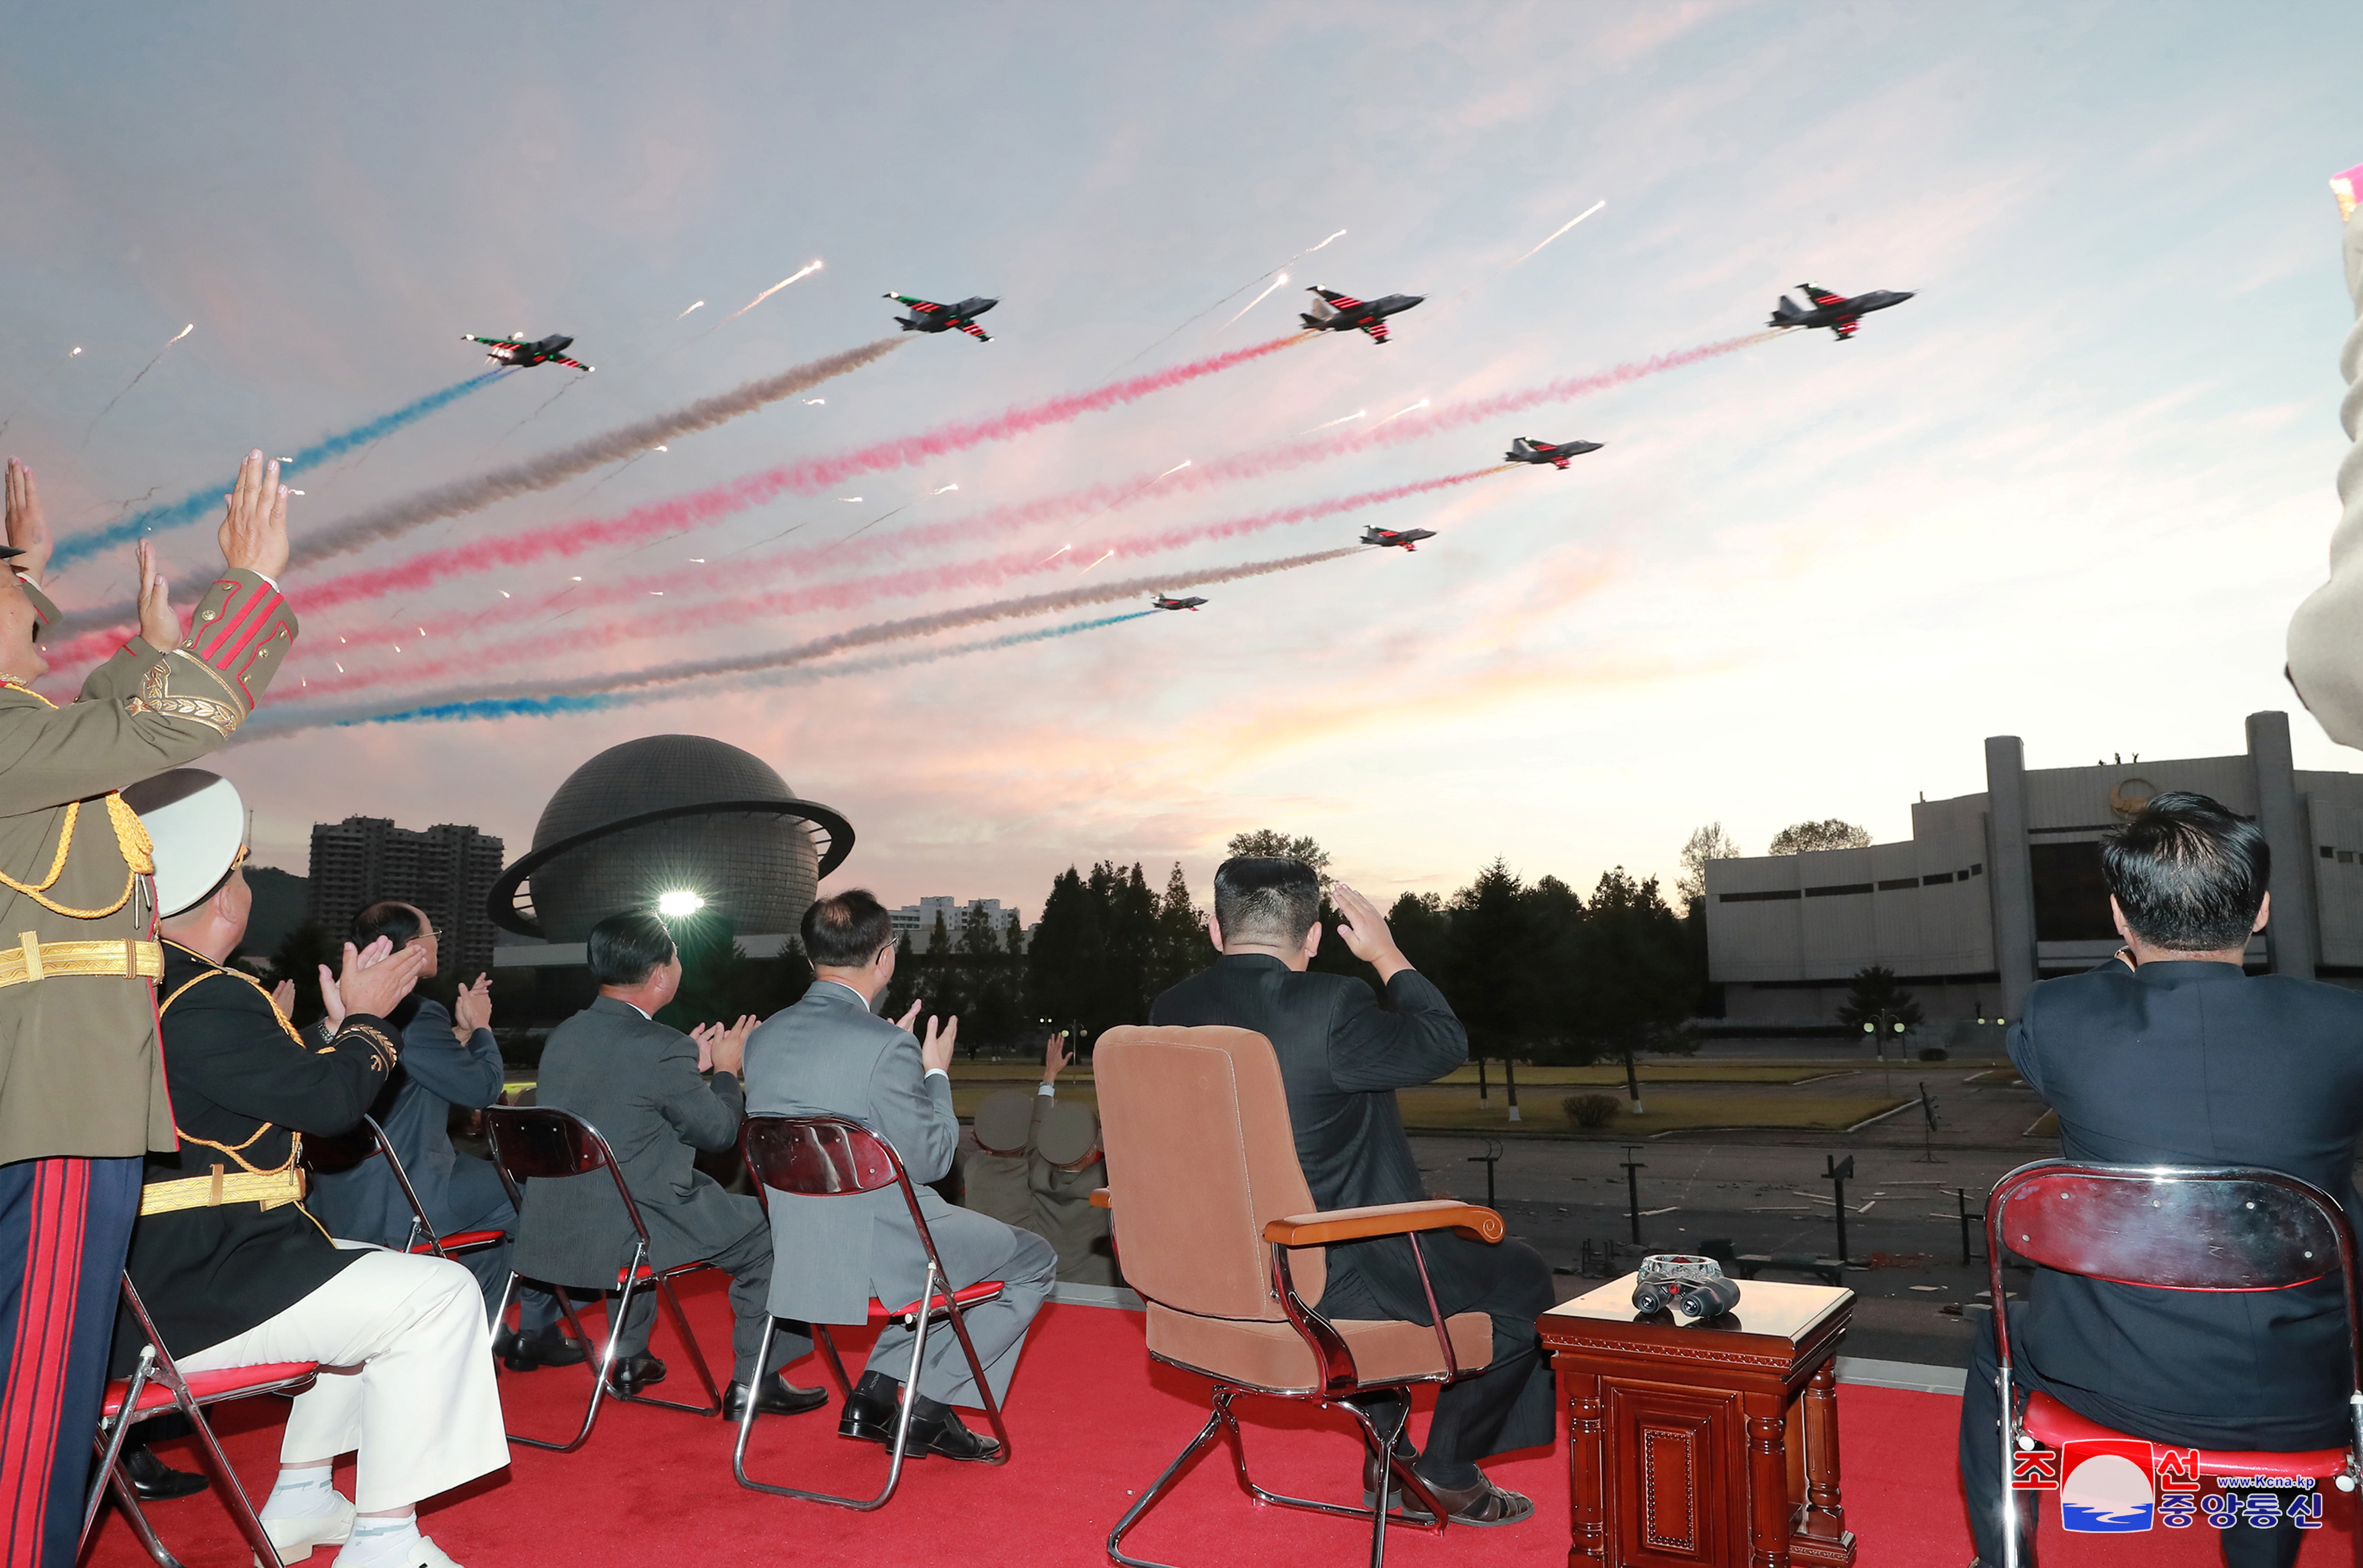 El líder de Corea del Norte, Kim Jong Un, observa los aviones durante un pase aéreo en la Exposición de Desarrollo de Defensa, en Pyongyang, Corea del Norte, en esta foto sin fecha publicada el 12 de octubre de 2021 por la Agencia Central de Noticias de Corea del Norte (KCNA). KCNA via REUTERS